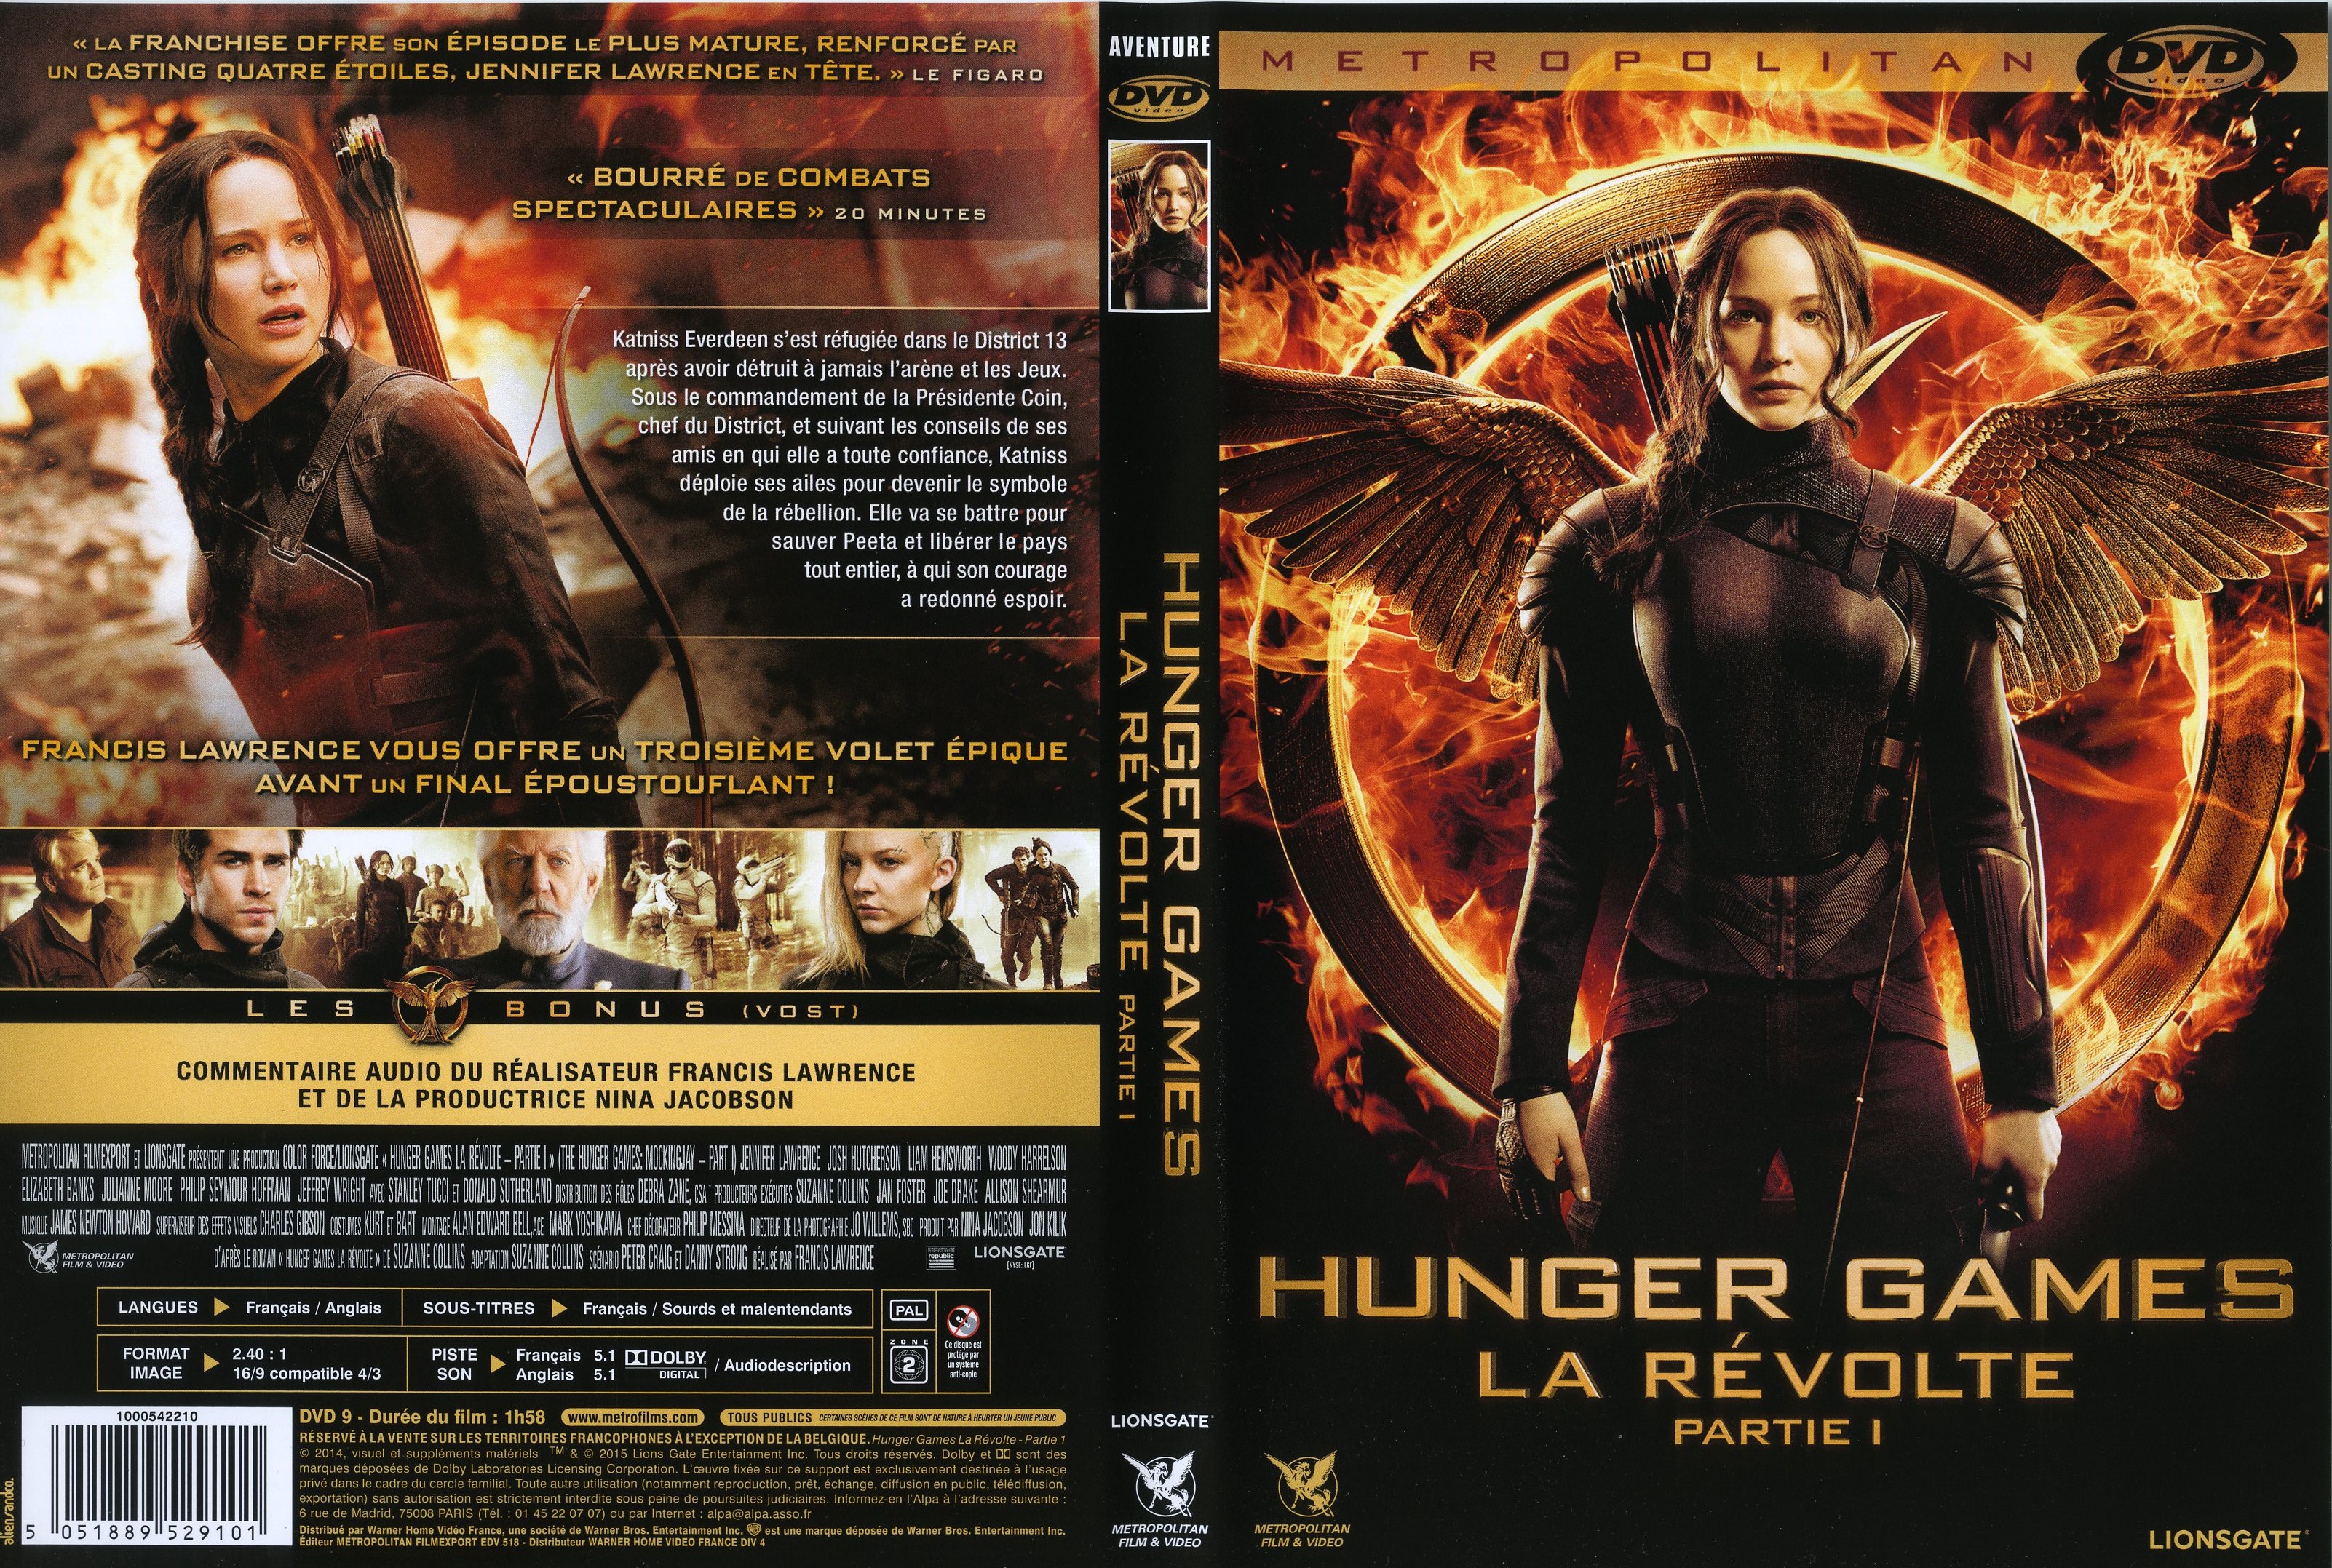 Jaquette DVD Hunger Games La Rvolte : Partie 1